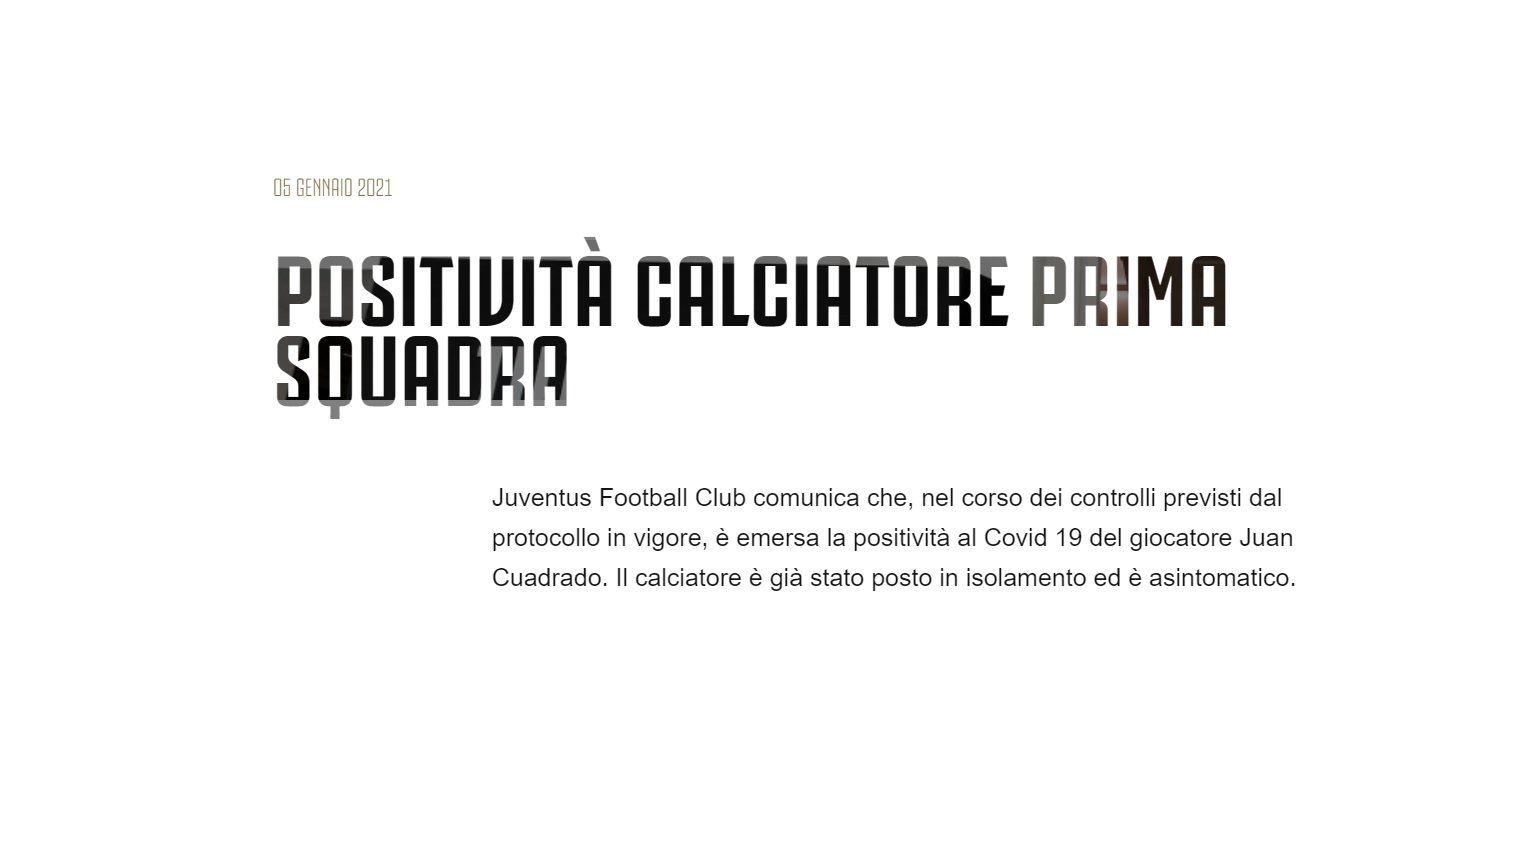 Cuadrado positivo al Covid (notizia Juventus.com)